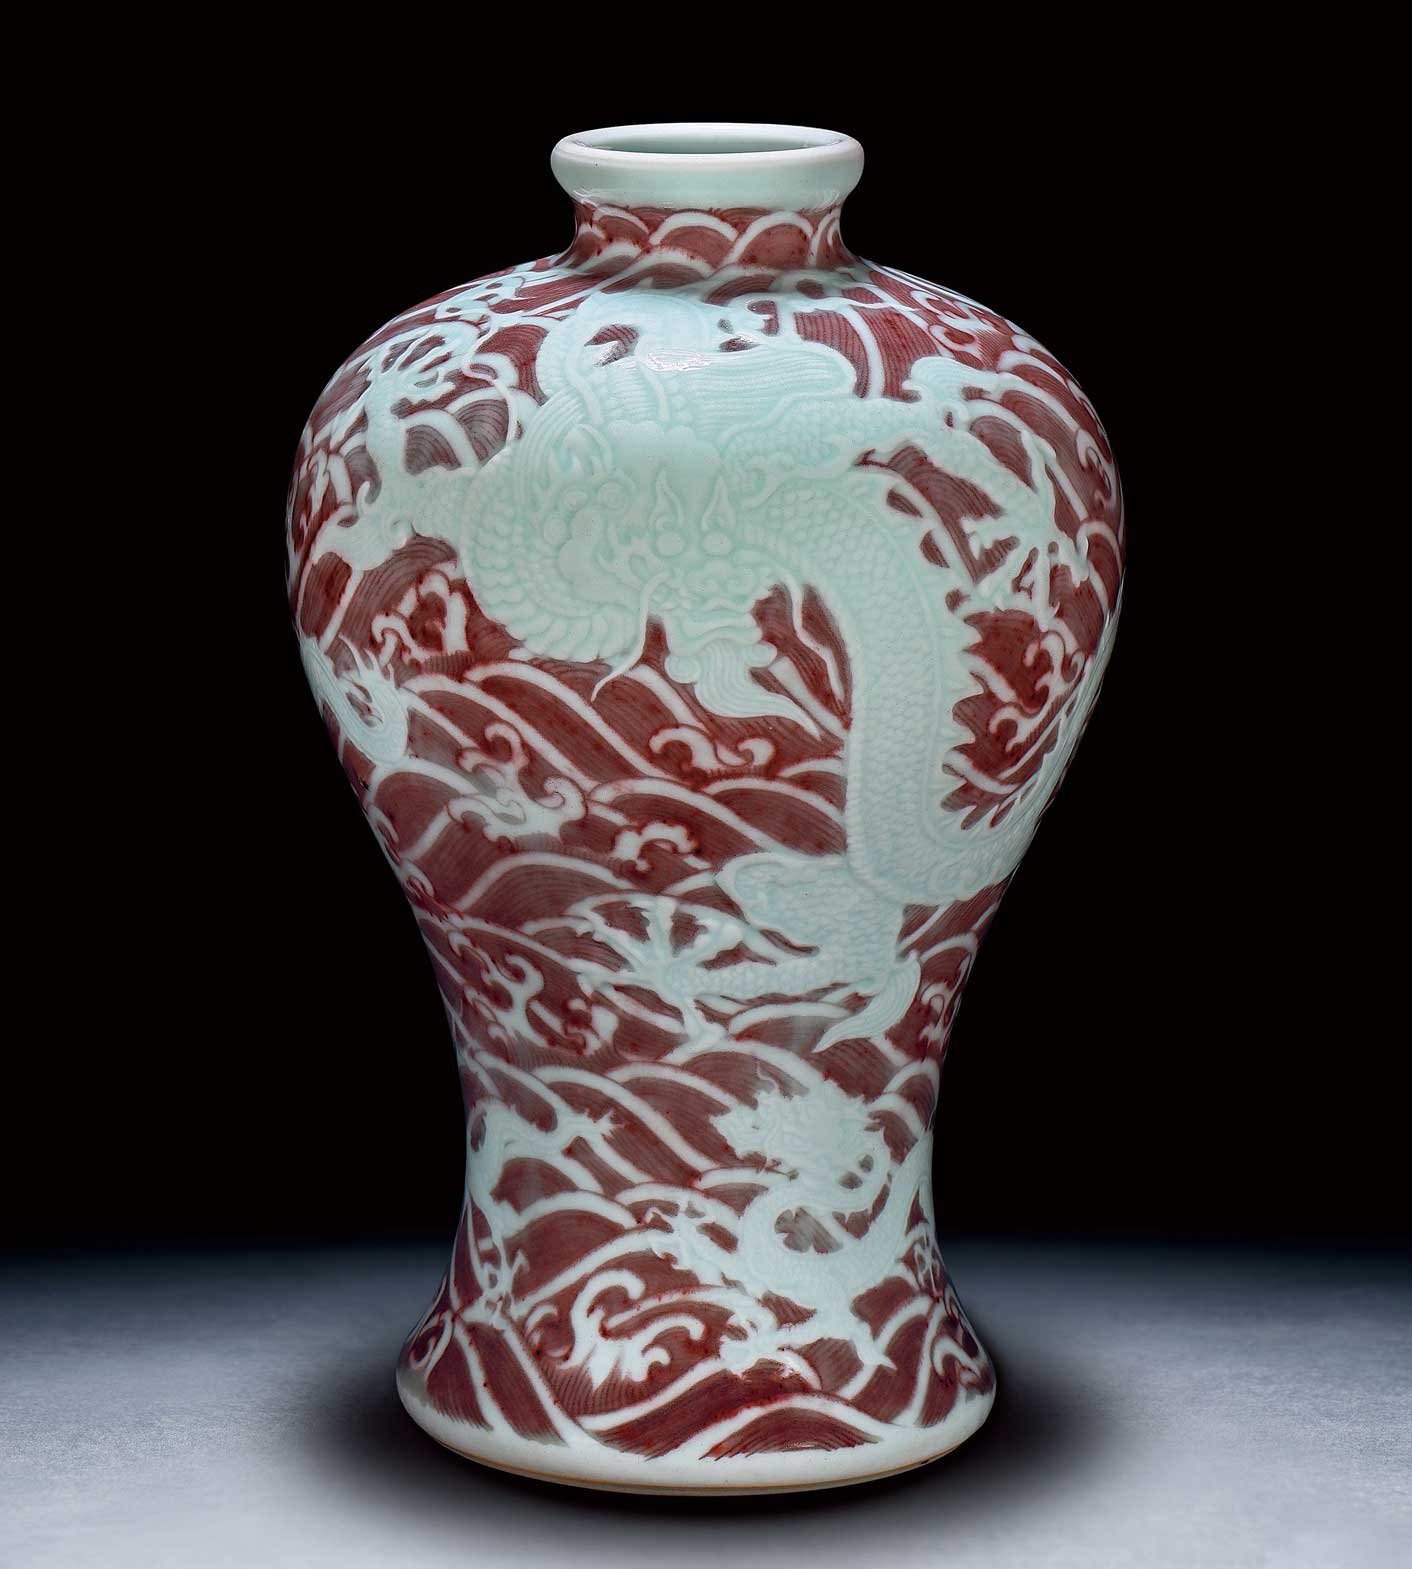 中國陶瓷器拍賣十大天價 釉裏紅剔刻海水龍紋梅瓶 青花雙圈內書